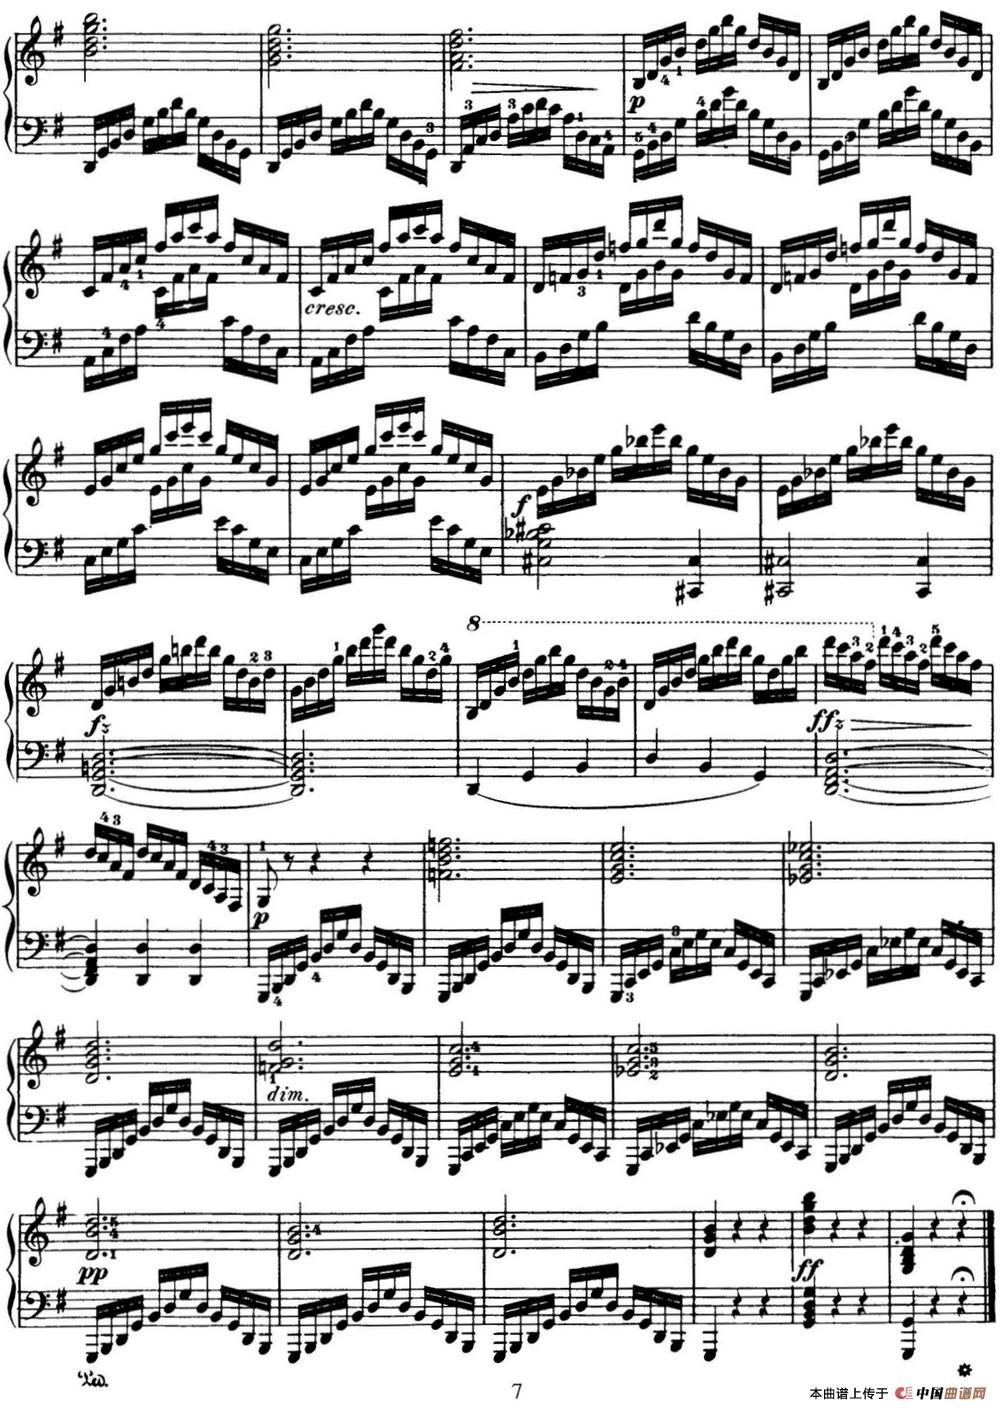 50首车尔尼Op.740钢琴手指灵巧技术练习曲（NO.2）(1)_-C740_页面_007.jpg